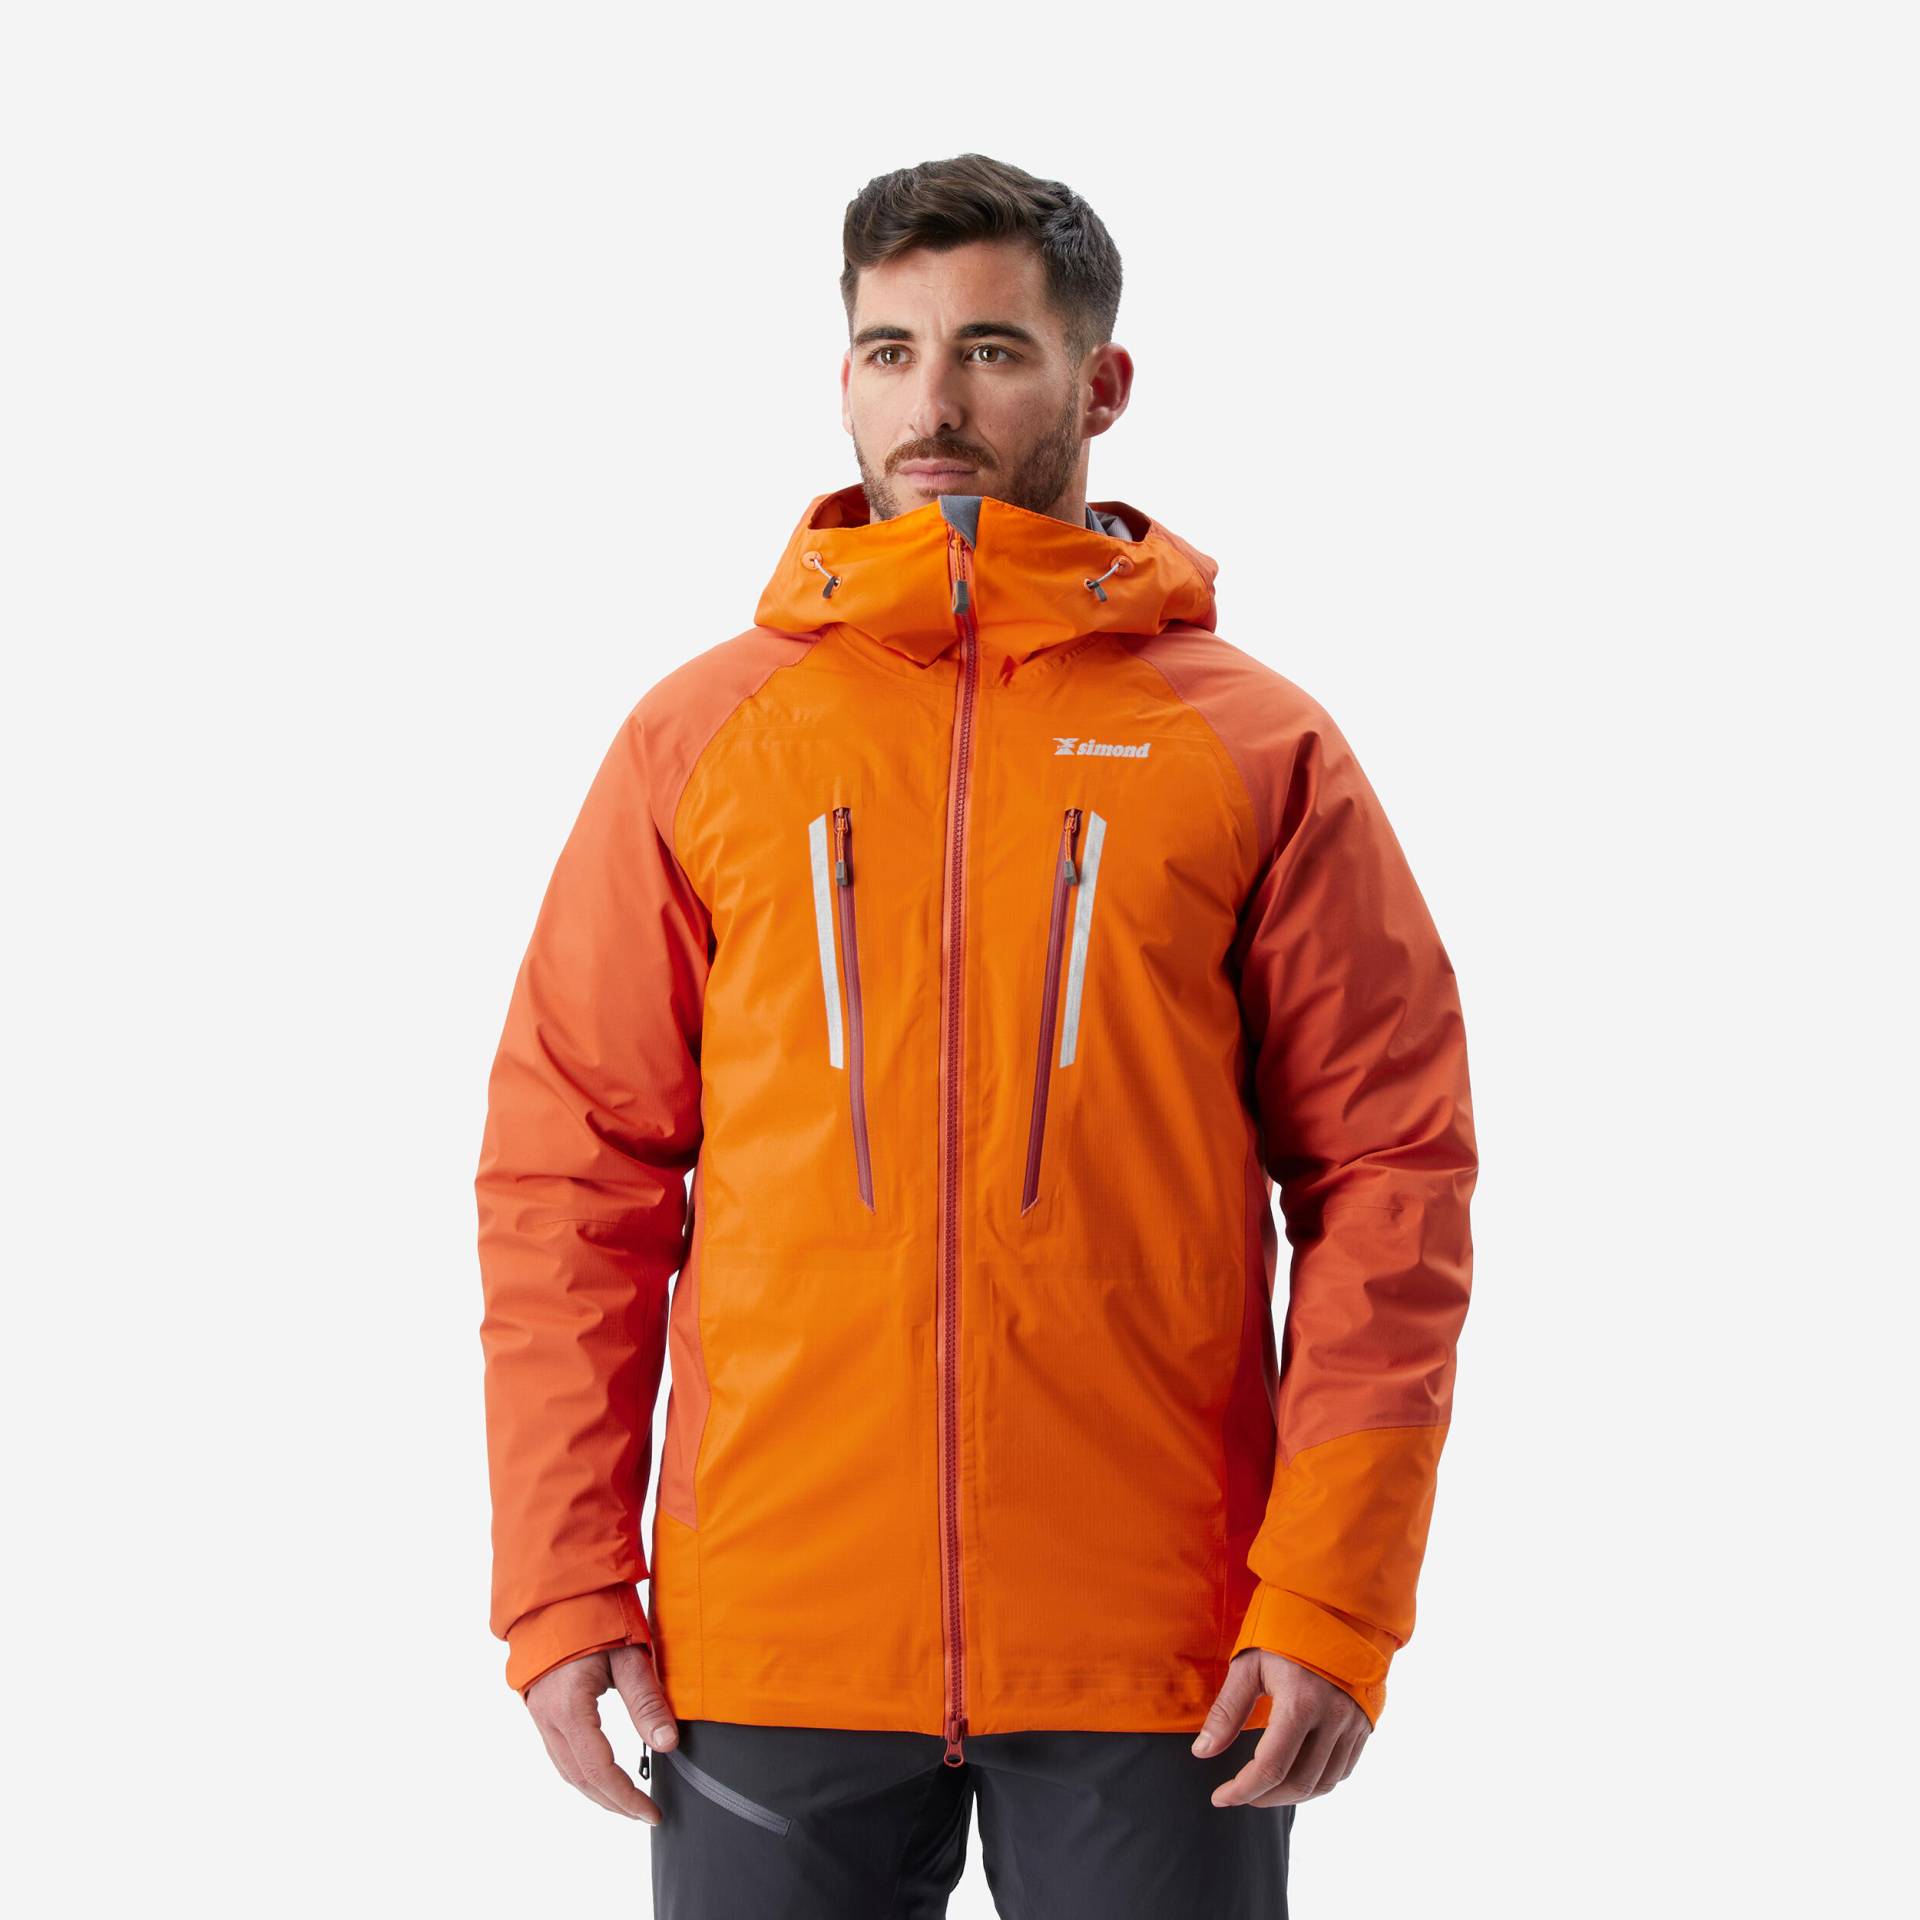 Regenjacke Herren wasserdicht - Alpinism Light orange von SIMOND